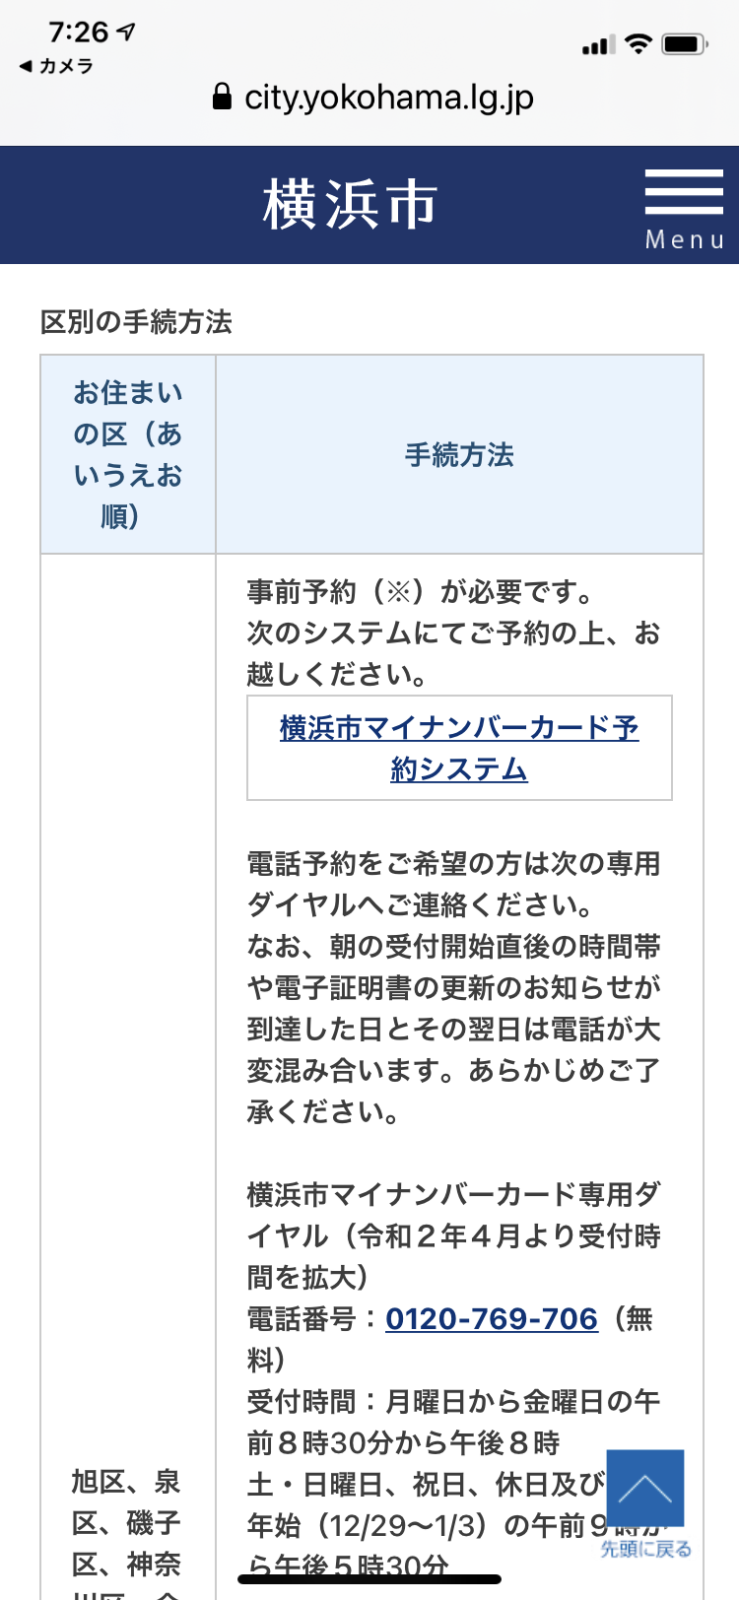 マイナンバーカード 予約 横浜 マイナンバーカードの電子証明書の更新について 横浜市